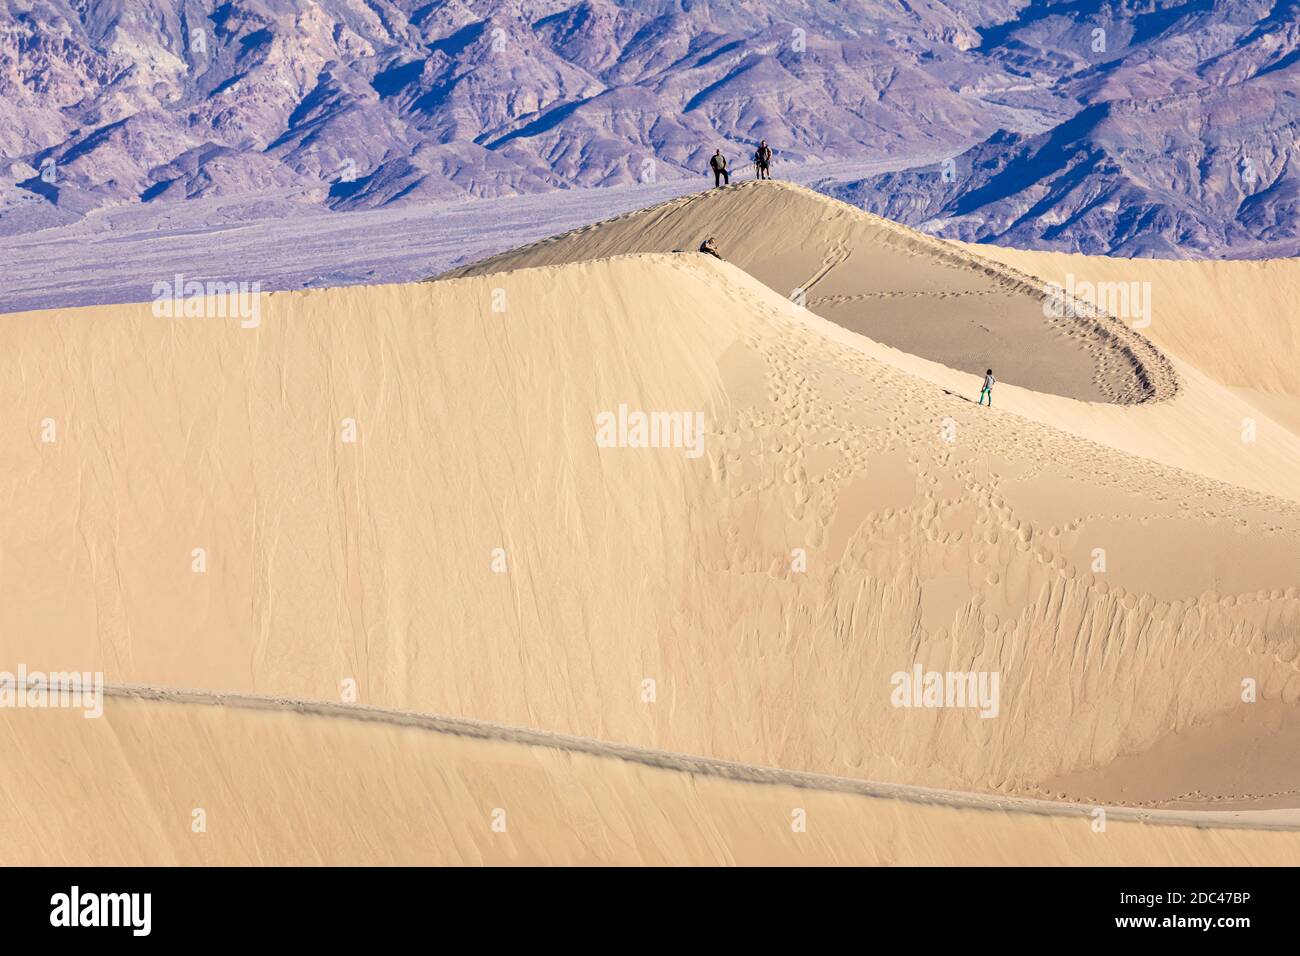 Una vista de las dunas de arena de Mesquite Flat, que es una amplia zona de dunas de arena bordeadas de montañas que alcanzan los 100 pies. Foto de stock